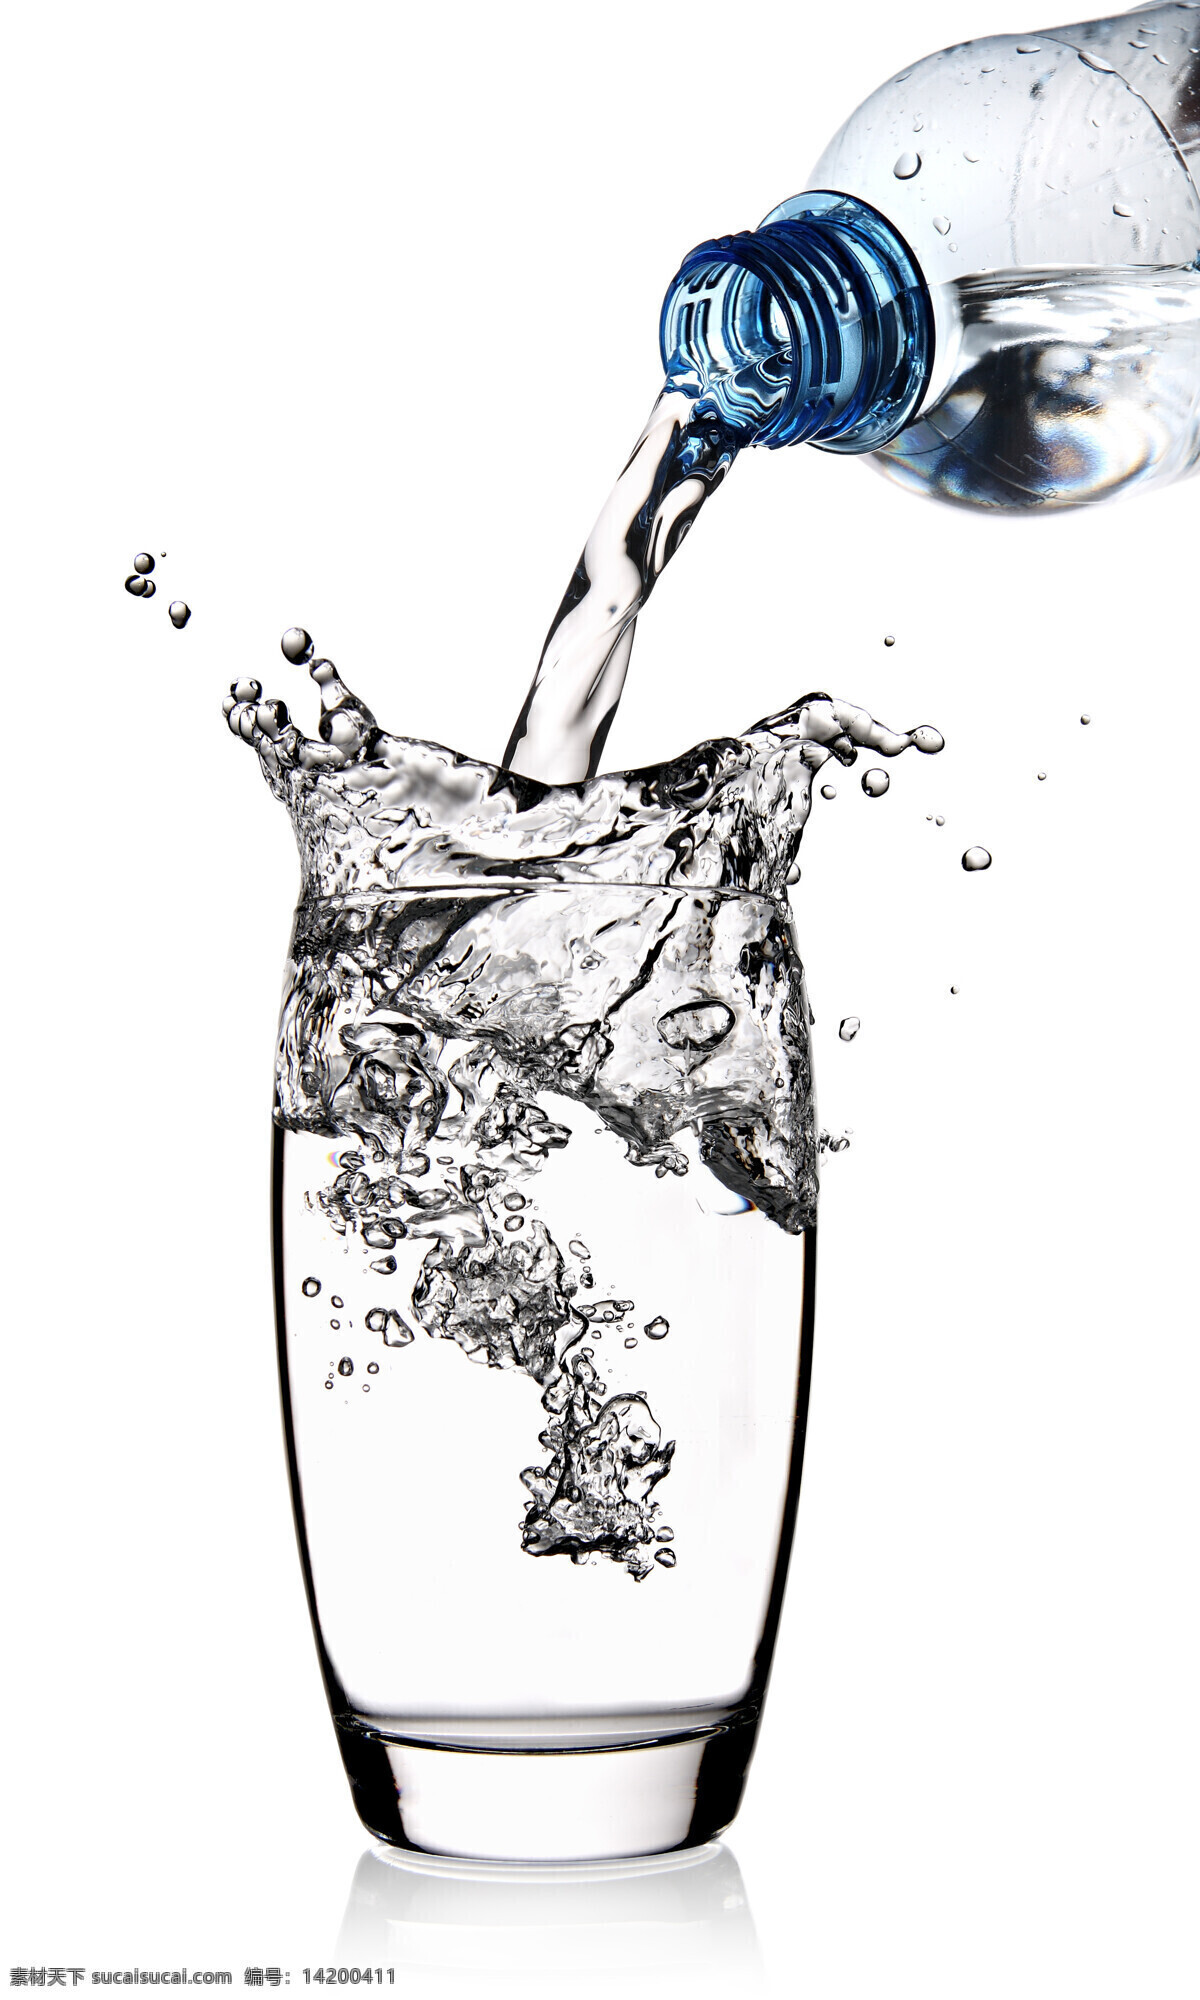 倒水 喝水 解渴 水瓶 矿泉水 蒸馏水倒水 饮用水 瓶子 水杯 杯子 酒 饮料 饮料酒水 餐饮美食